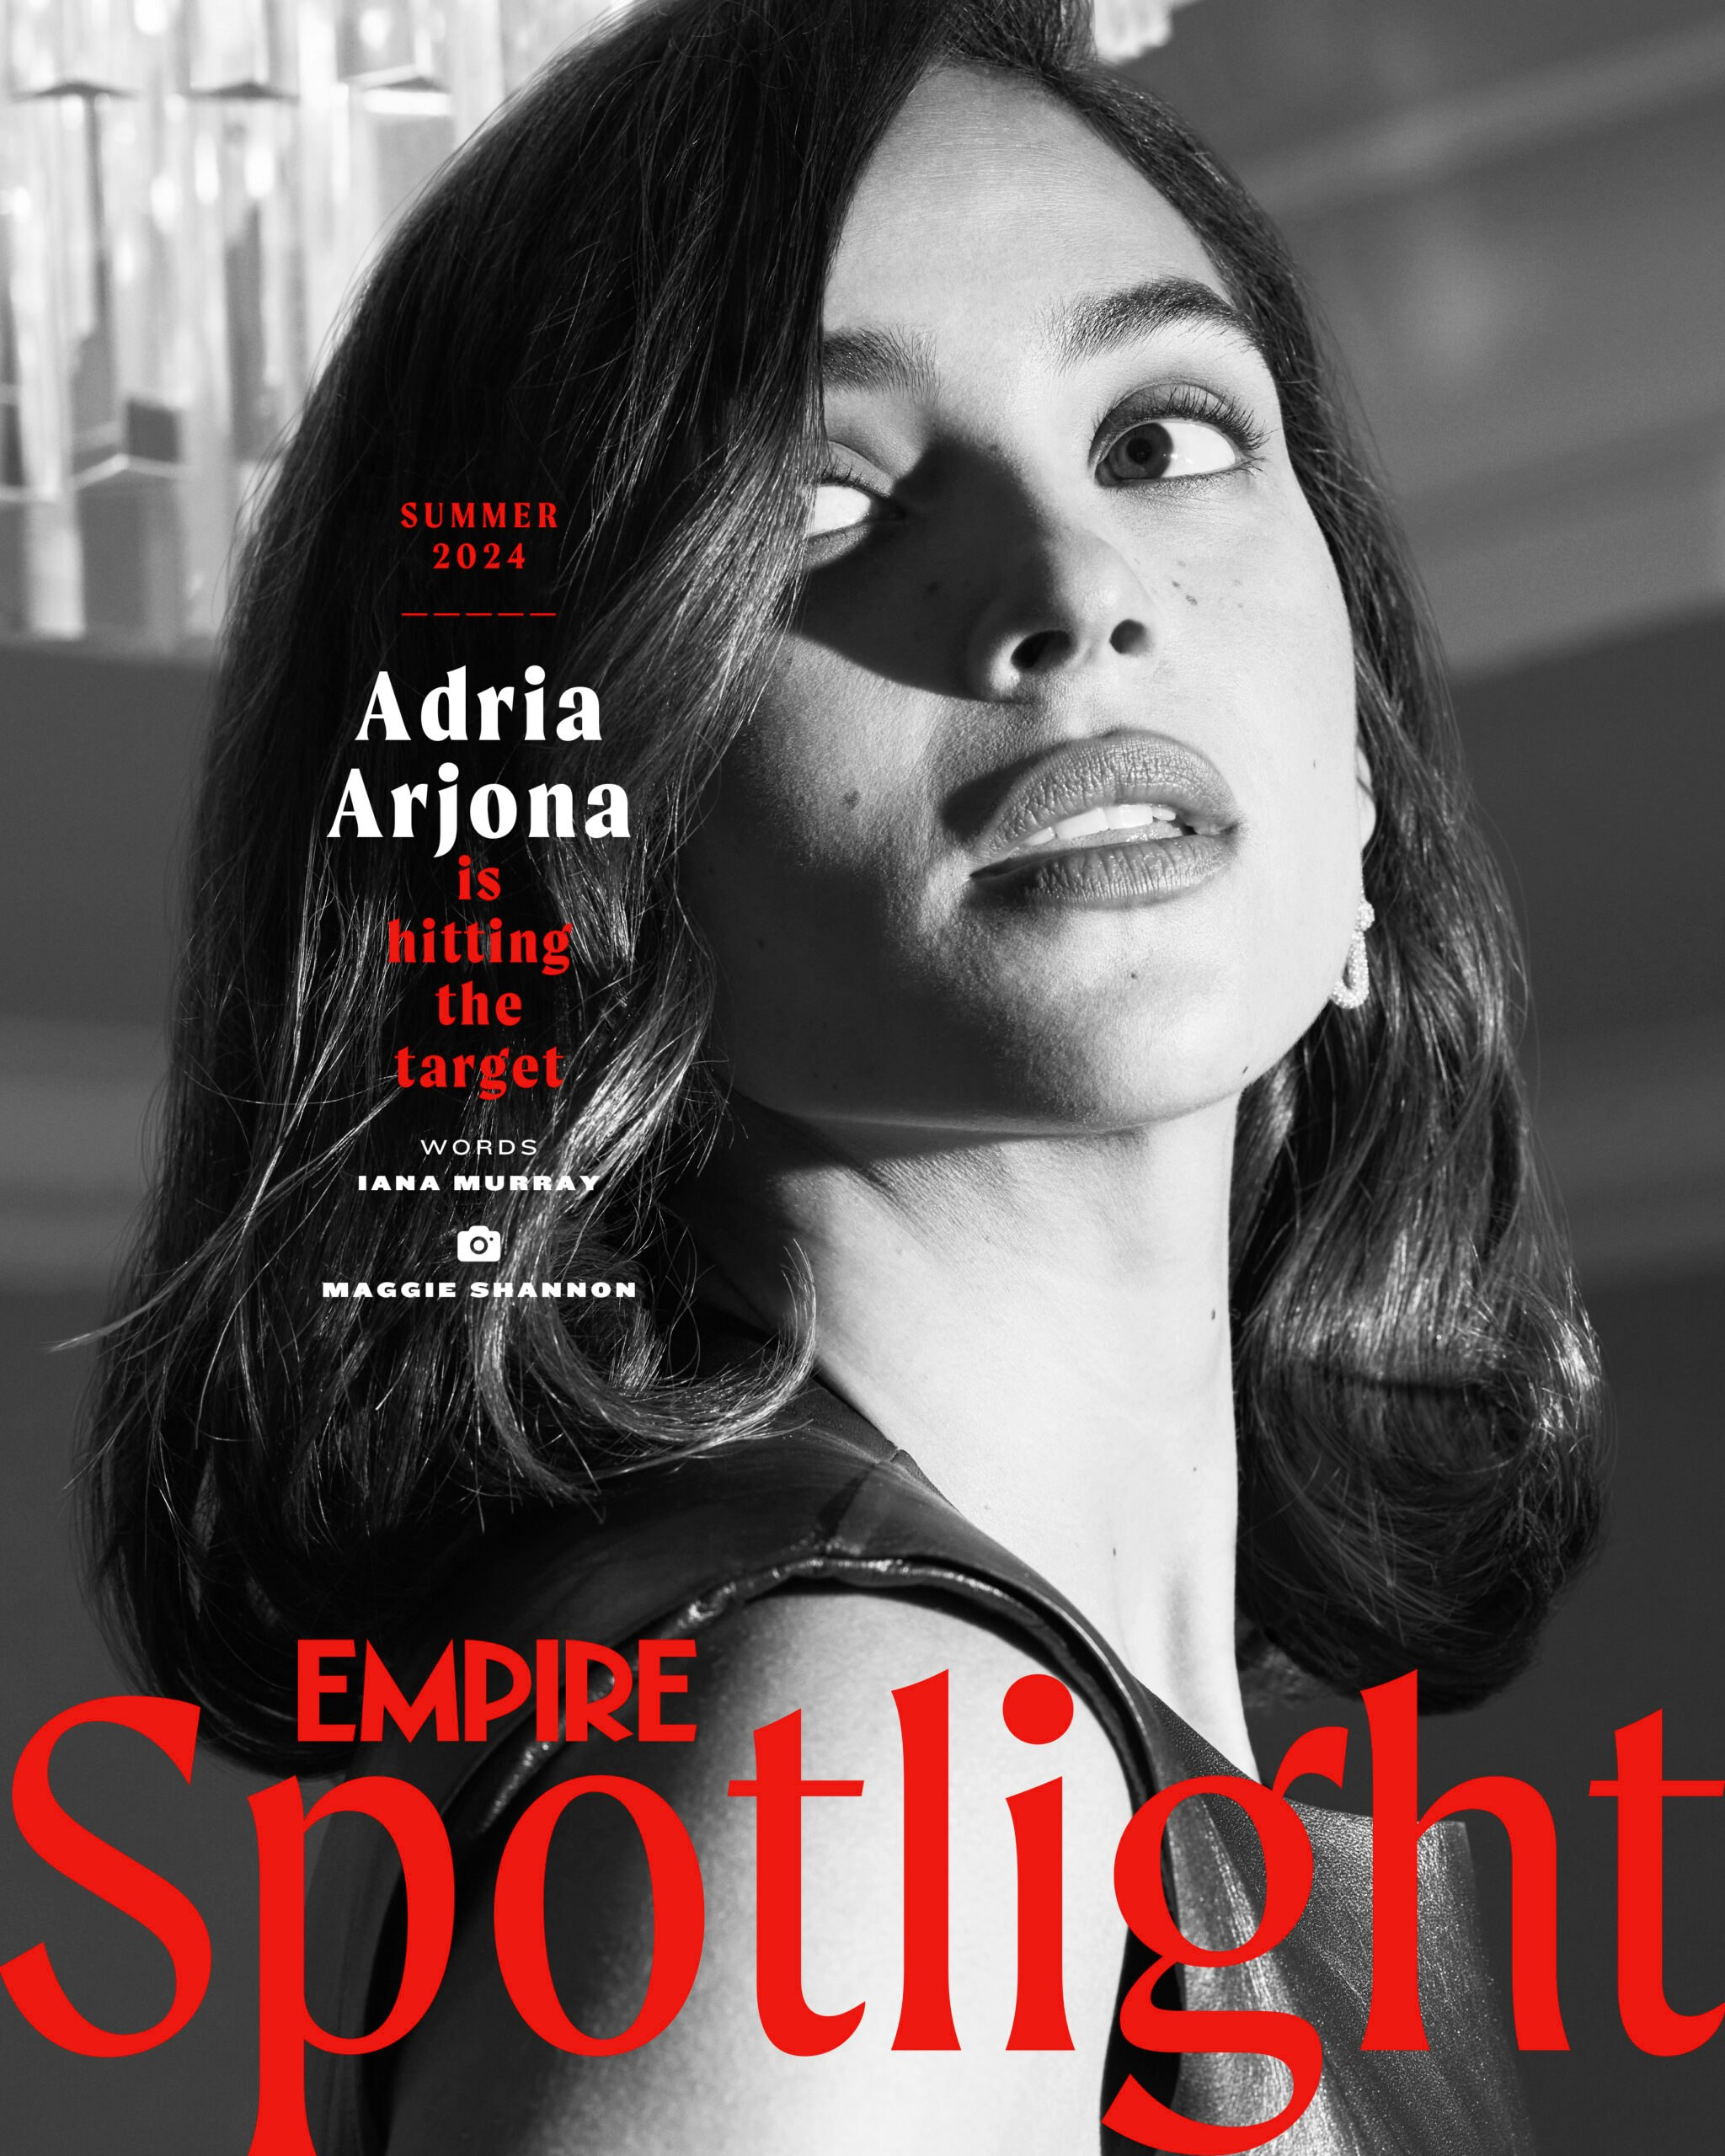 Empire Spotlight – Adria Arjona